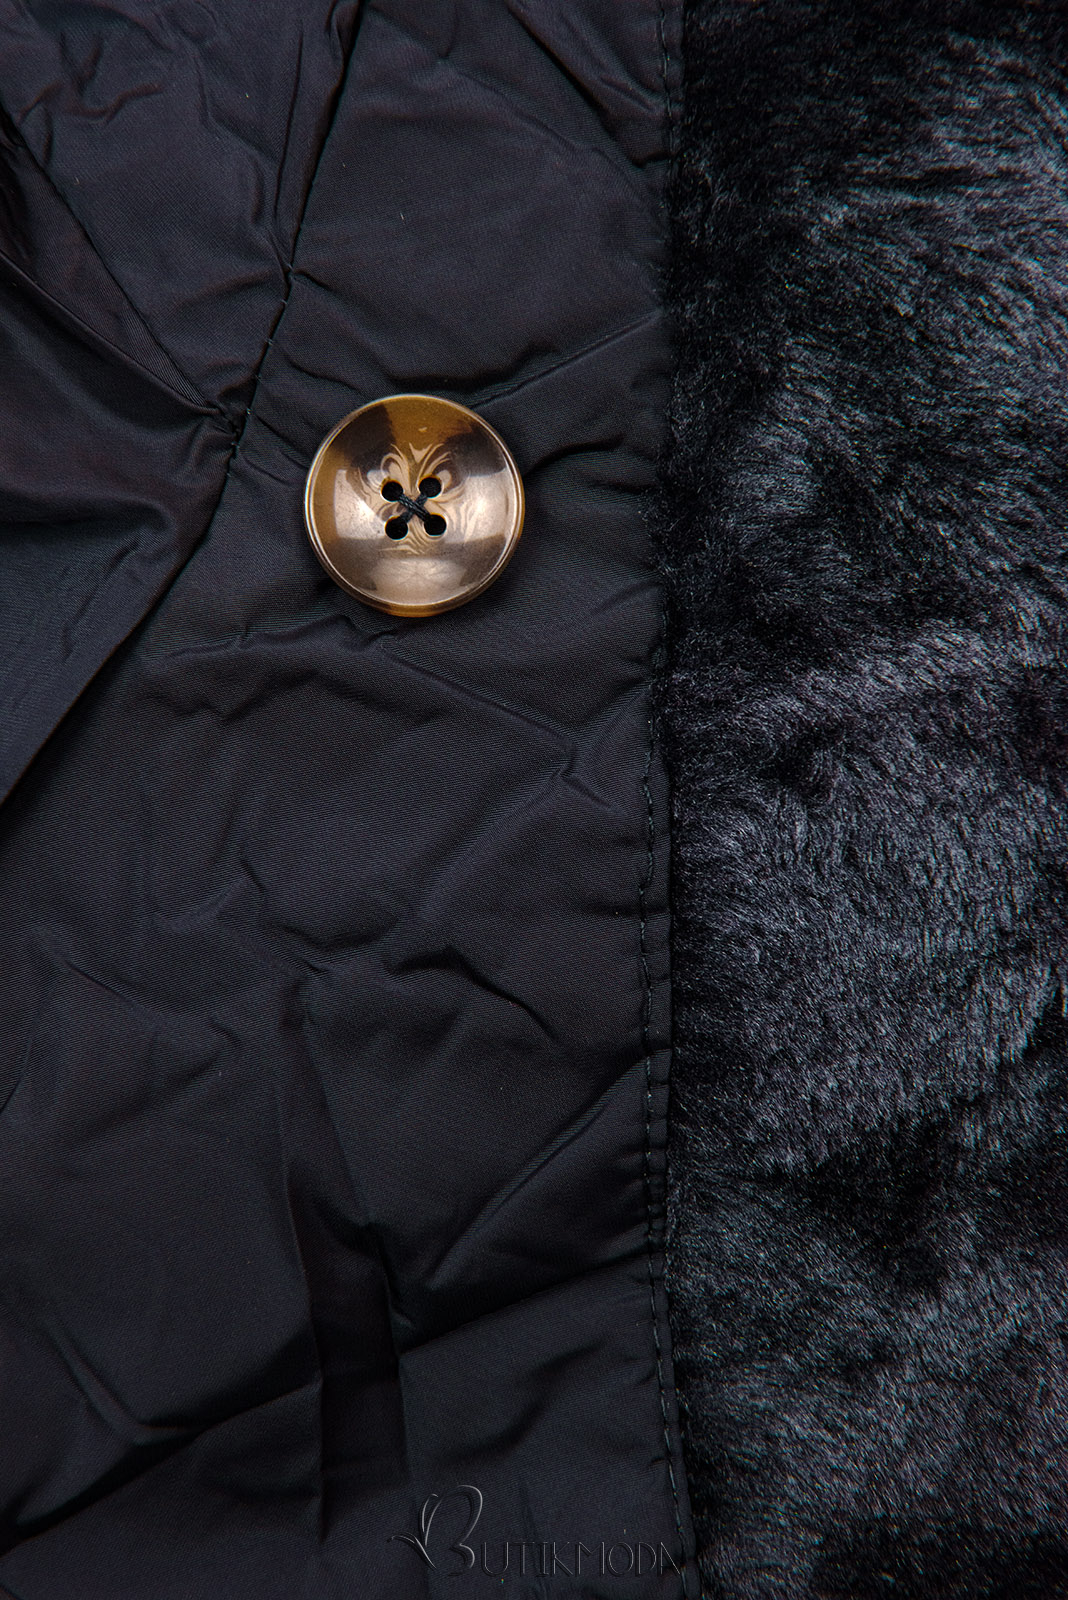 Sötétkék színű steppelt téli kabát magas gallérral